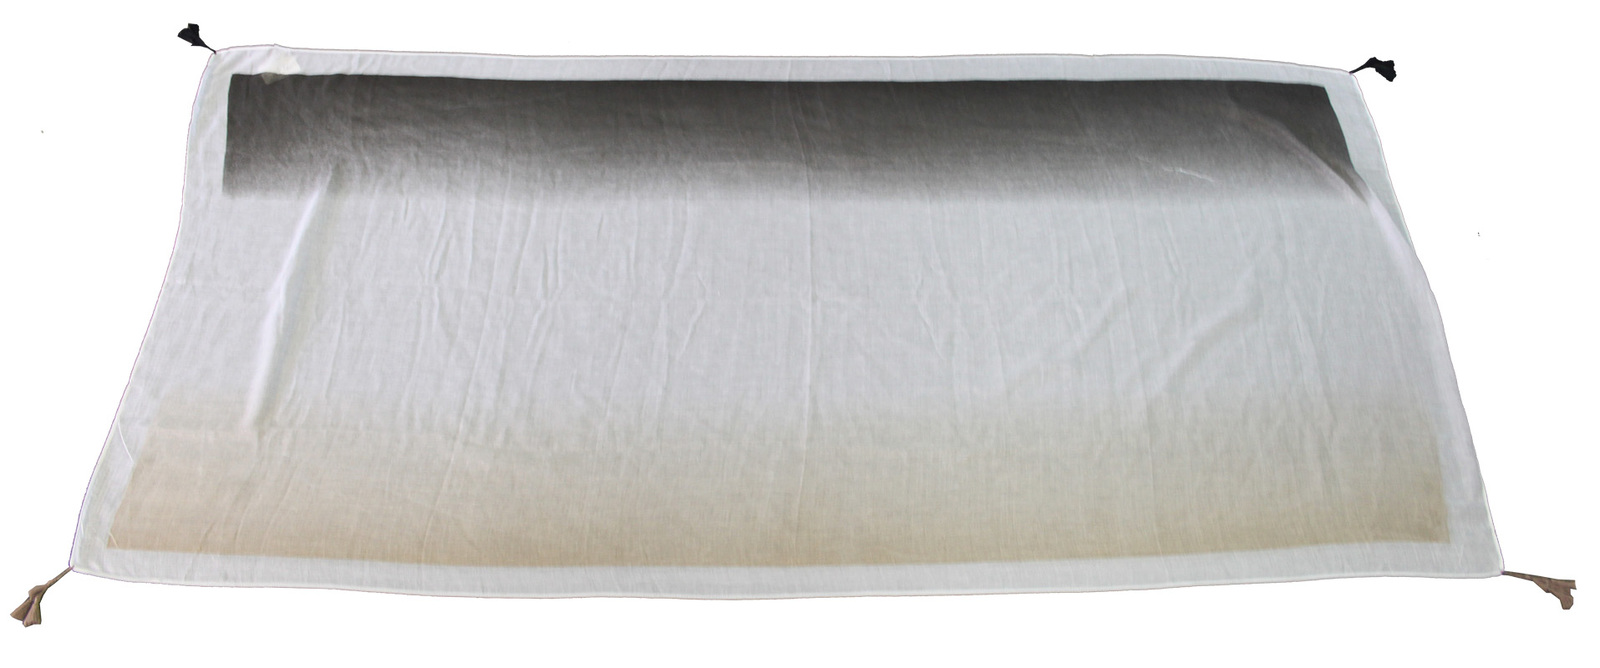 *Polyester Scarf - Grey/White/Tan 105 x 180cm